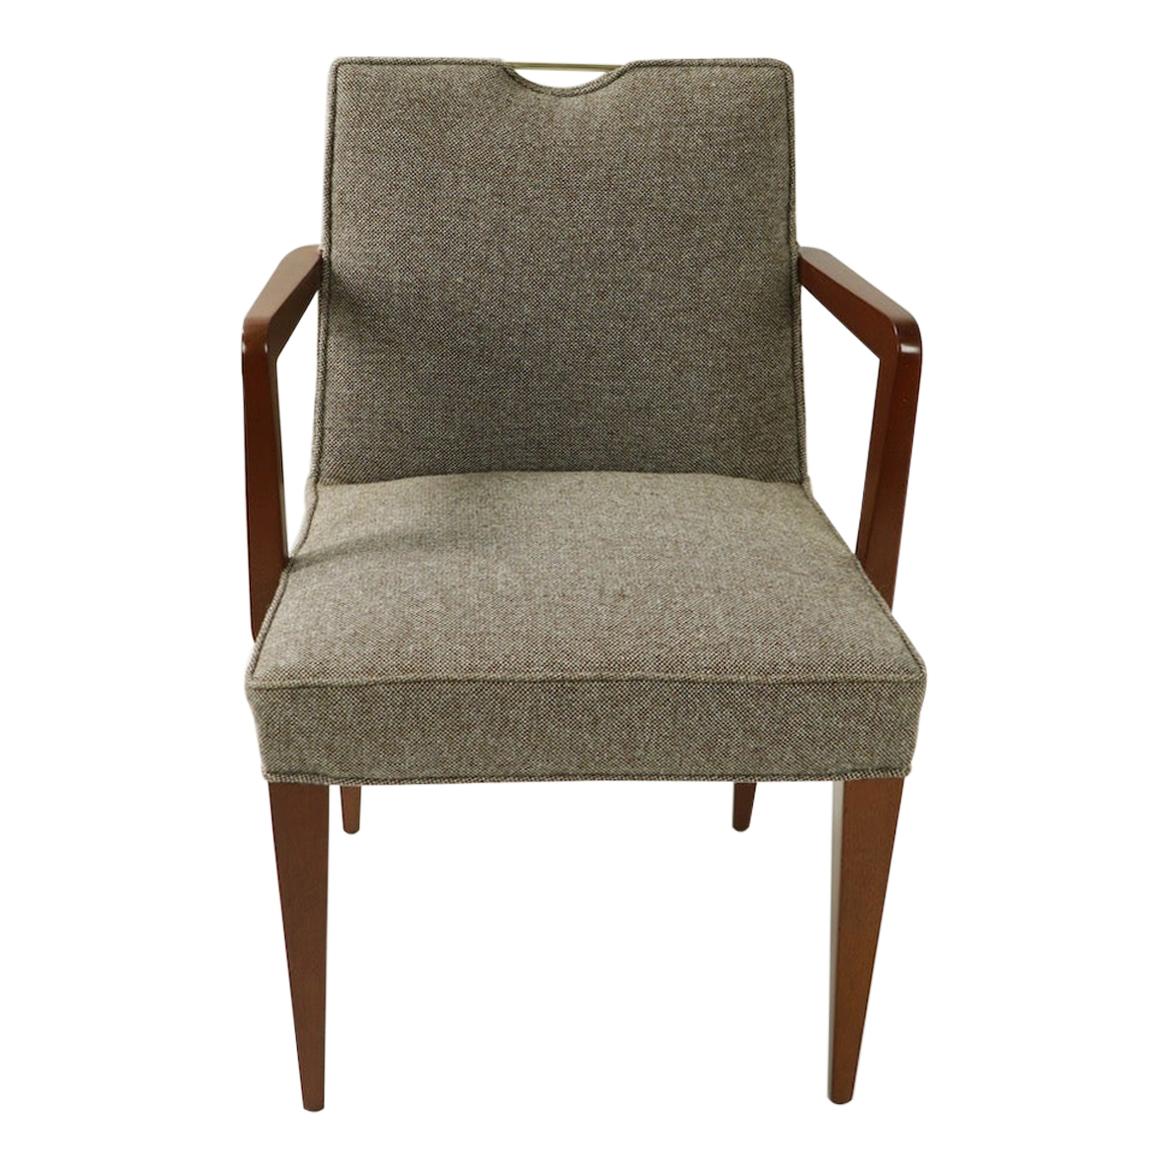 Merveilleuse paire de chaises de salle à manger conçue par Edward Wormley pour Dunbar (modèle 4710A). Ces chaises ont été récemment restaurées, refinies et retapissées, et sont en excellent état, prêtes à être utilisées. Des exemples difficiles à